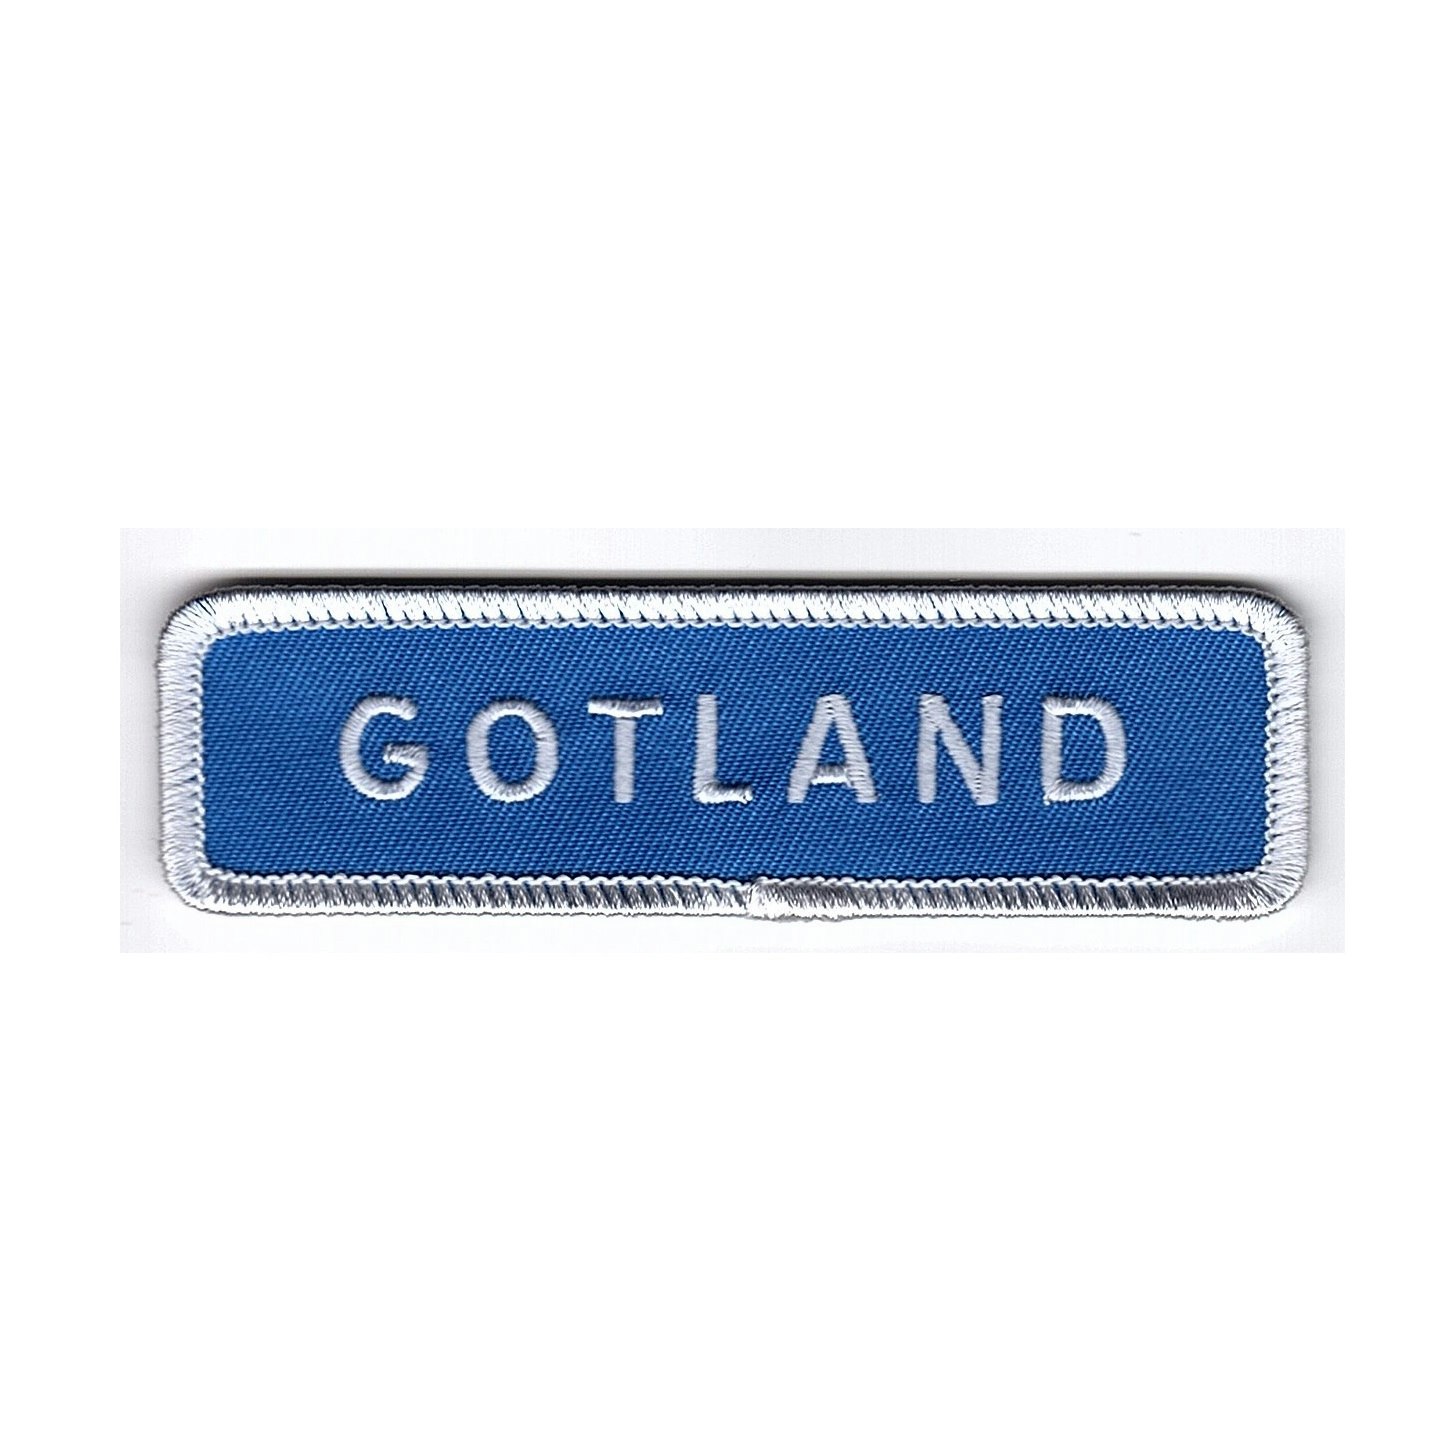 Gotland vägskylt